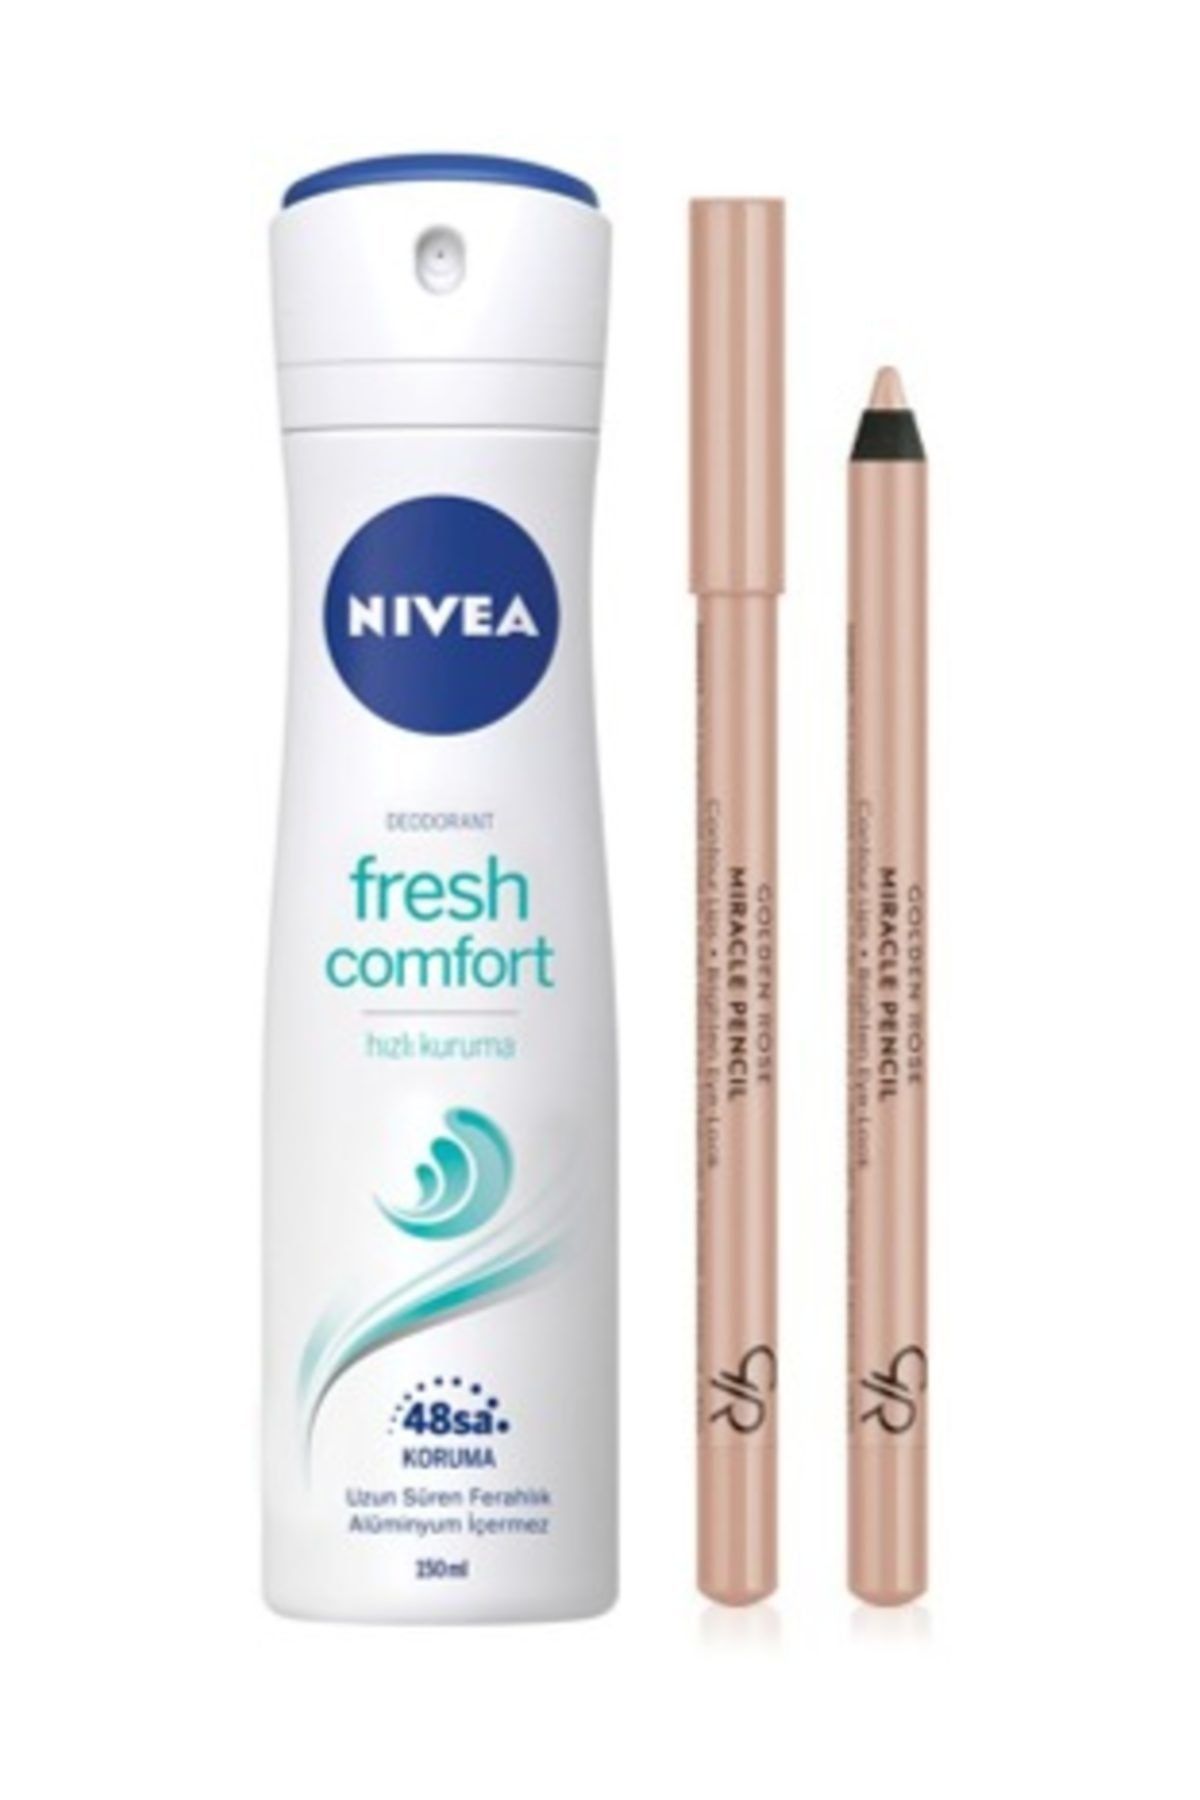 NIVEA Kadın Deodorant Fresh Comfort 150 Ml + Golden Rose Göz Ve Dudak Aydınlatıcı Kalem Miracle Pencil